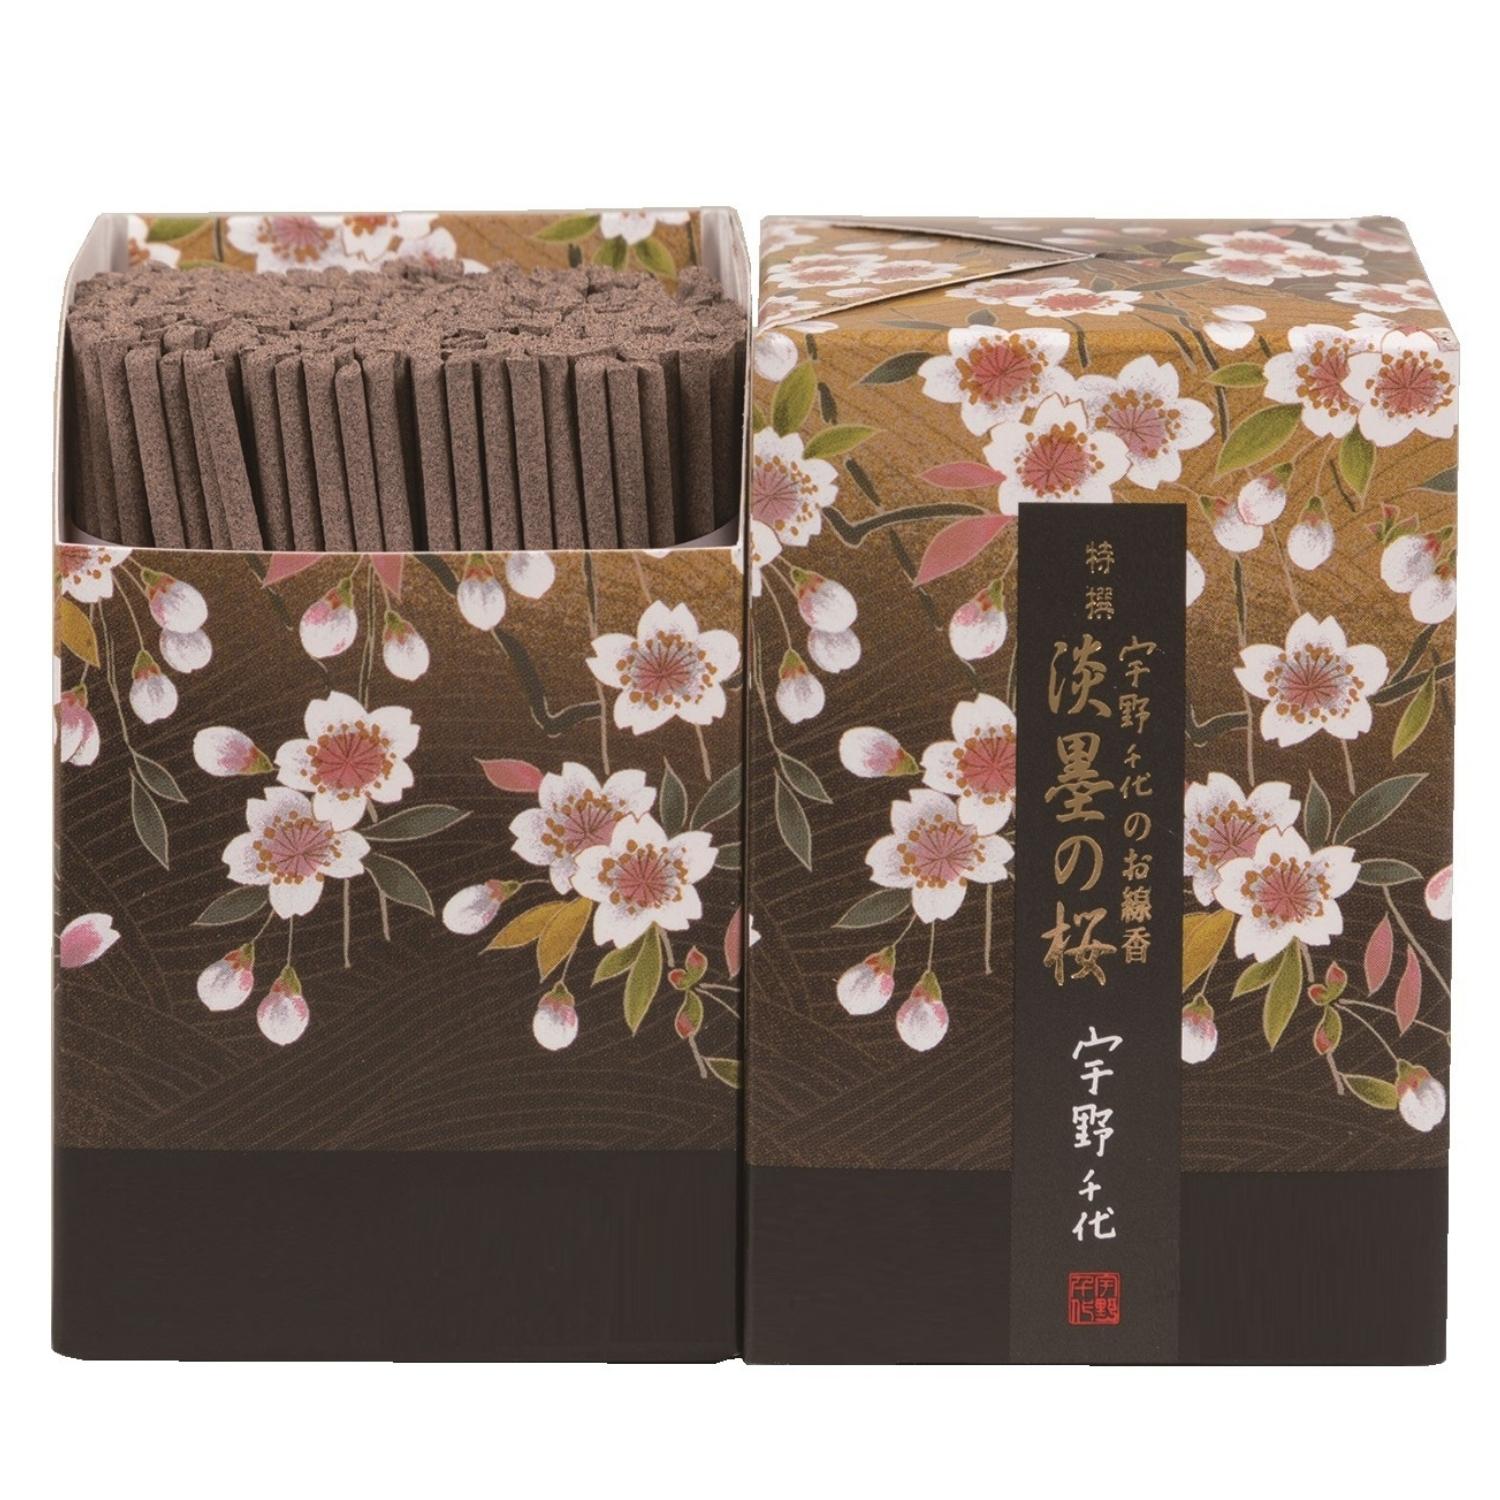 日本香堂 の煙の少ないお線香 宇野千代のお線香 特選淡墨の桜